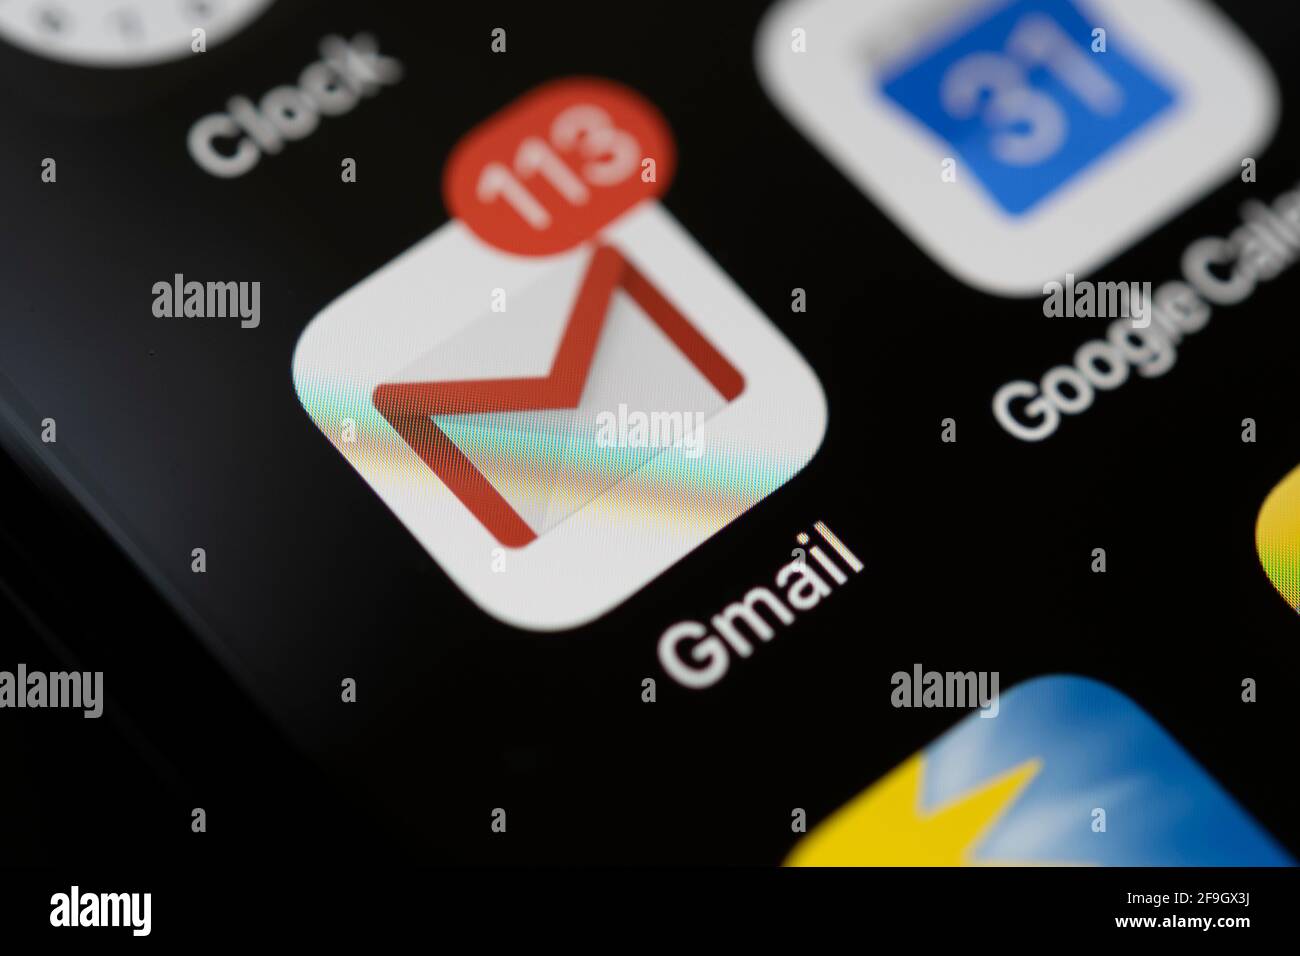 Gmail, E-Mail Dienst, logo, icône d'application, Anzeige auf einem Bildskirm vom Handy, smartphone, Makroaufnahme, détail, formatfuellend Banque D'Images